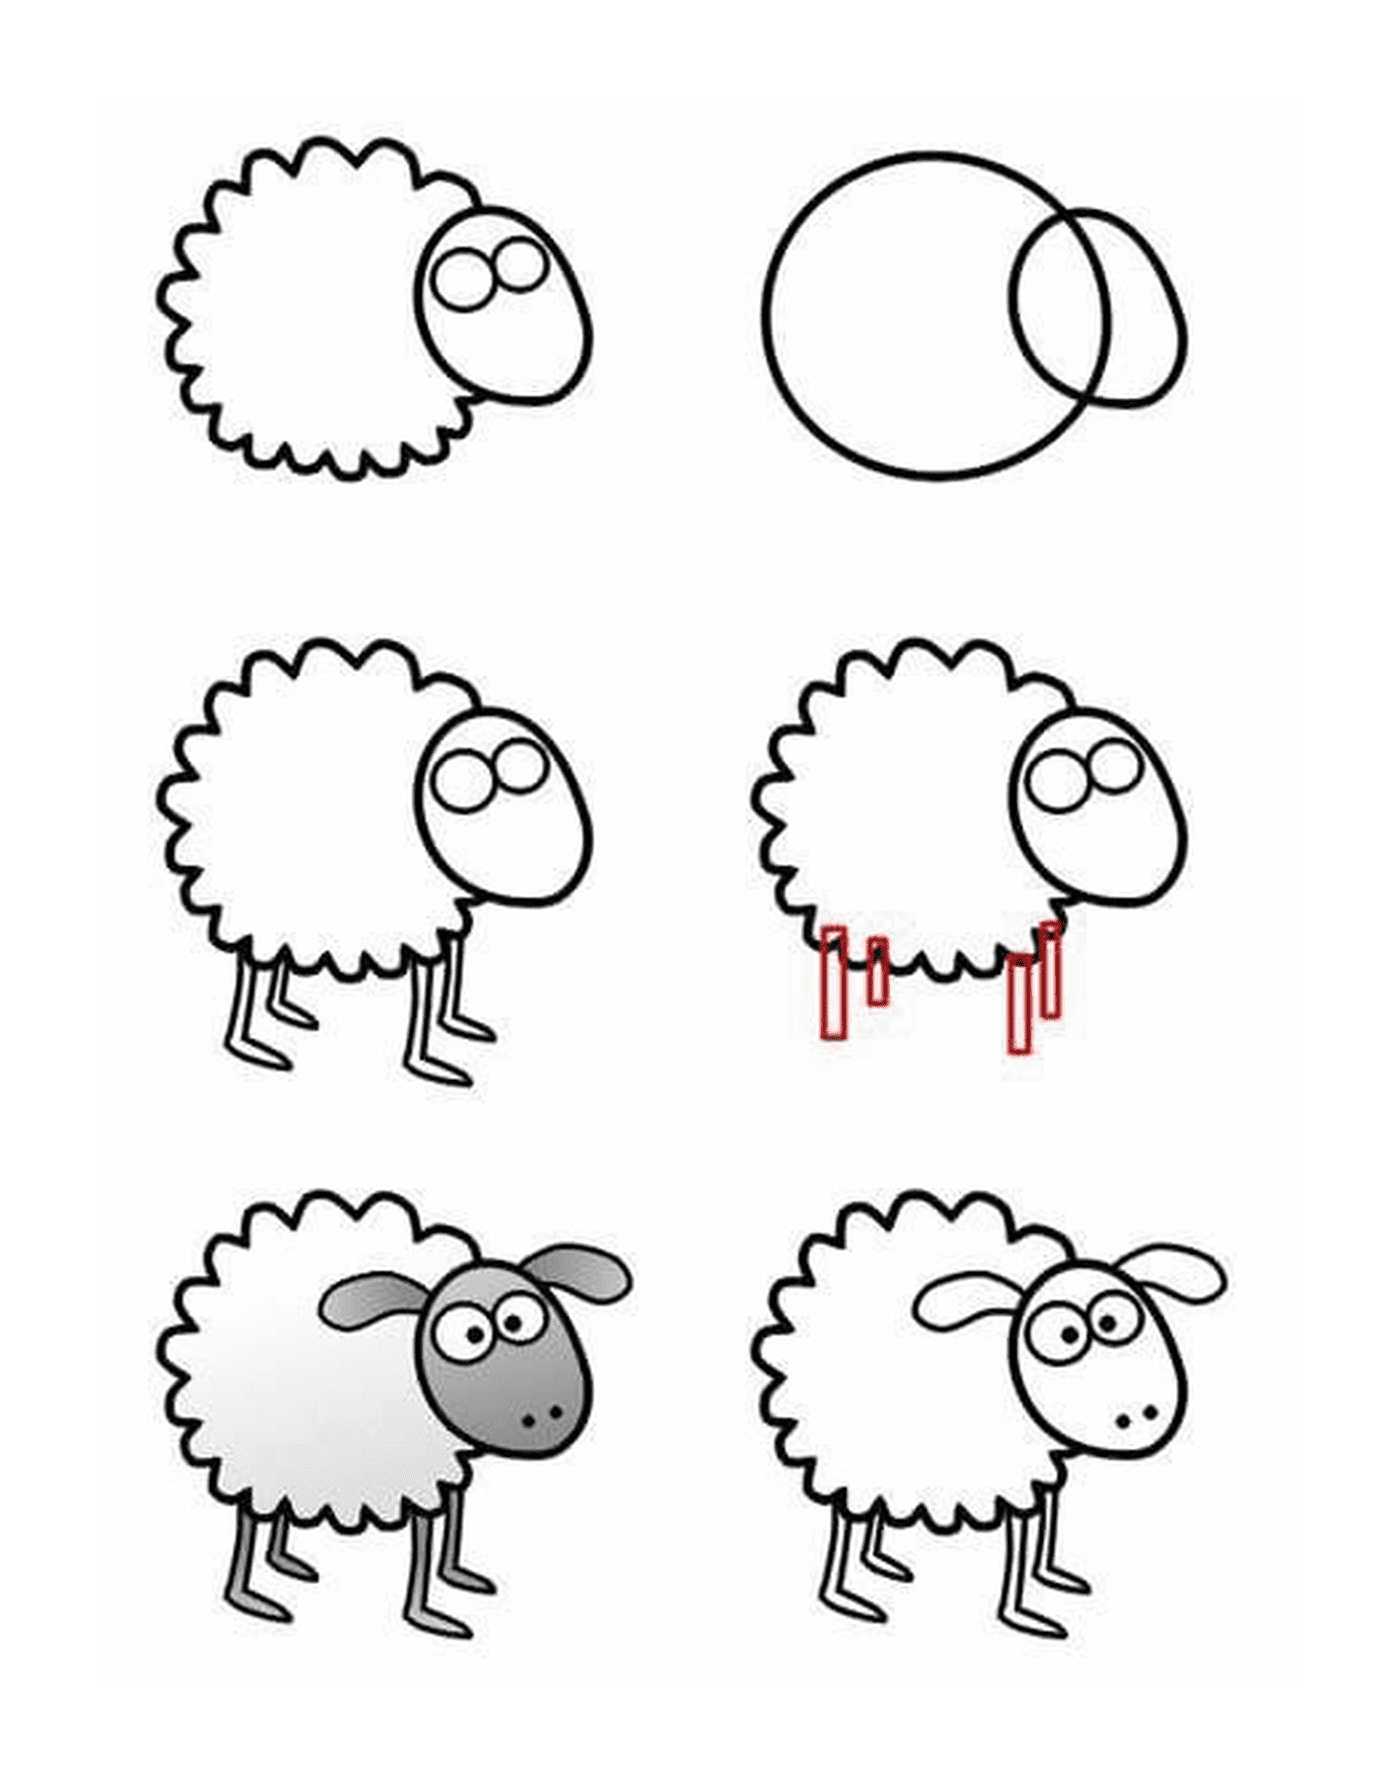  Como desenhar uma ovelha passo a passo 